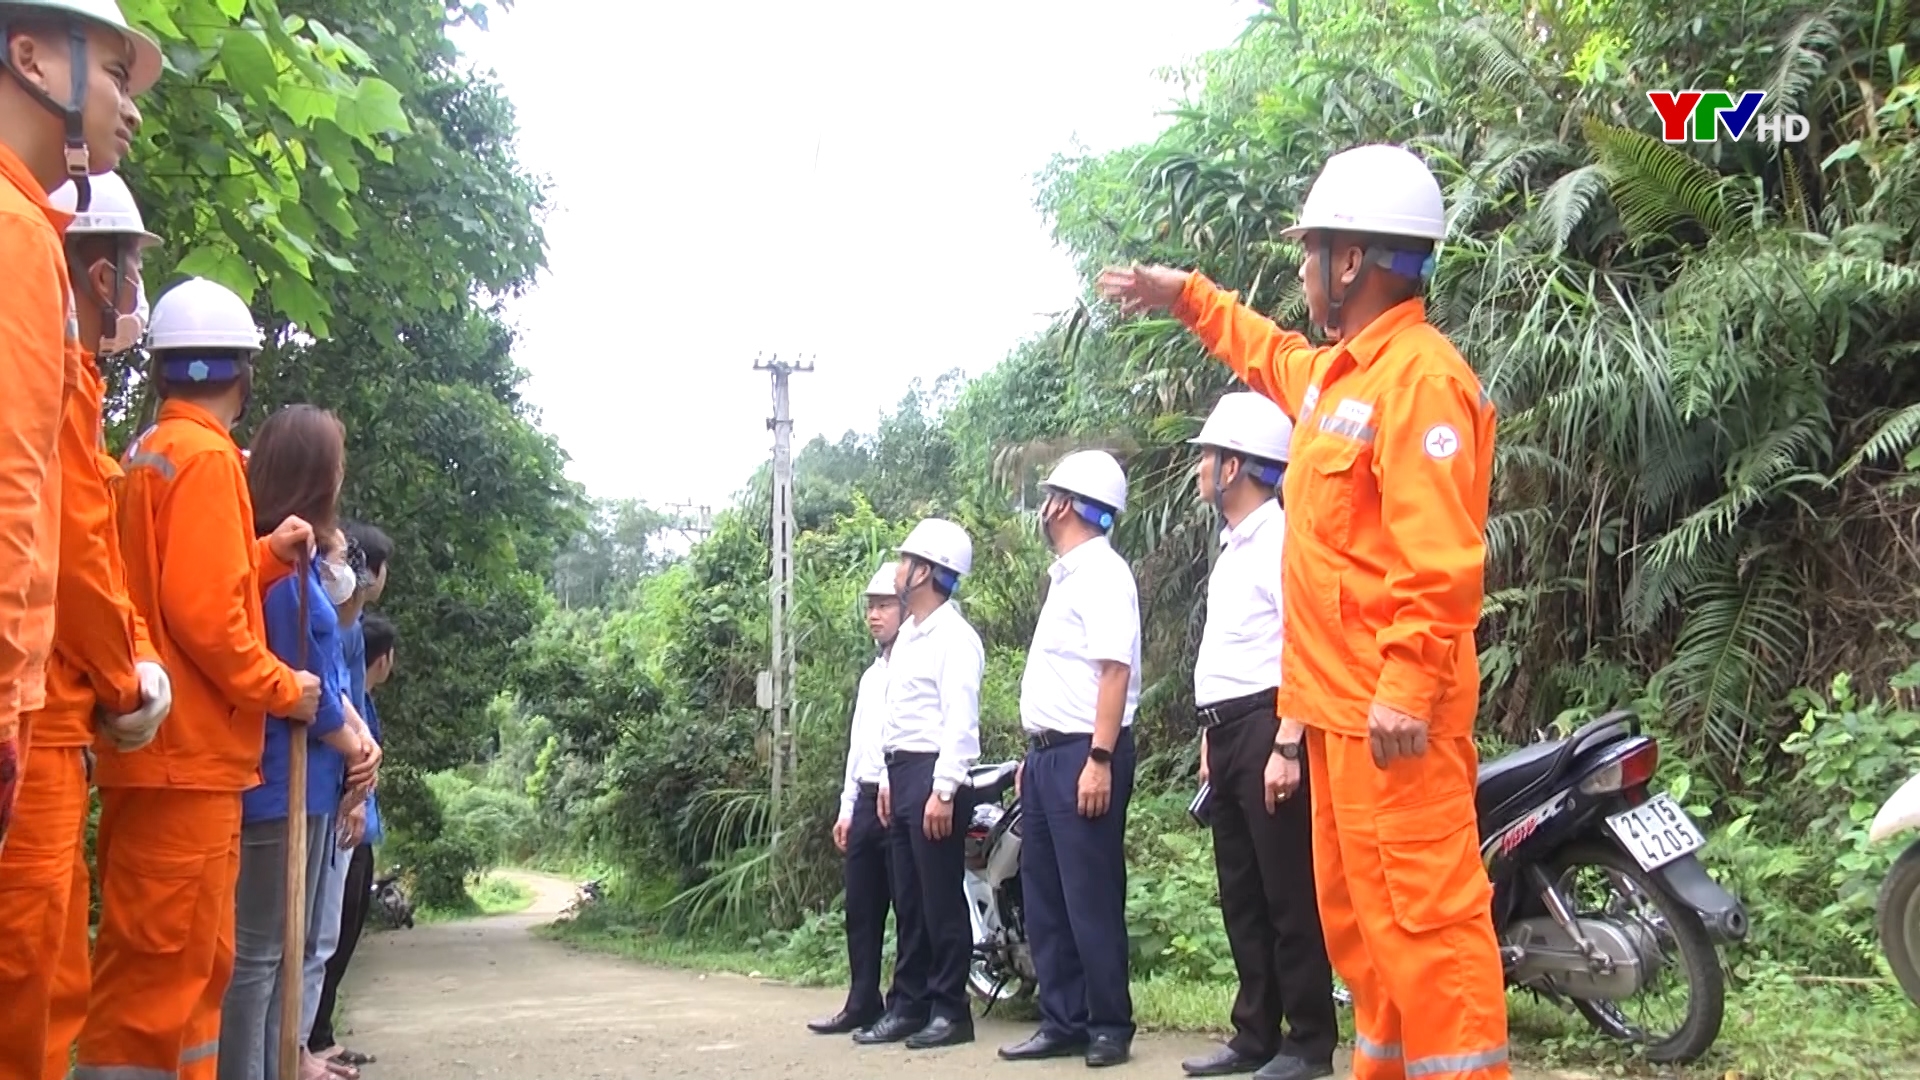 Đoàn thanh niên Công ty Điện lực Yên Bái tuyên truyền bảo vệ hành lang an toàn lưới điện cao áp tại huyện Văn Chấn